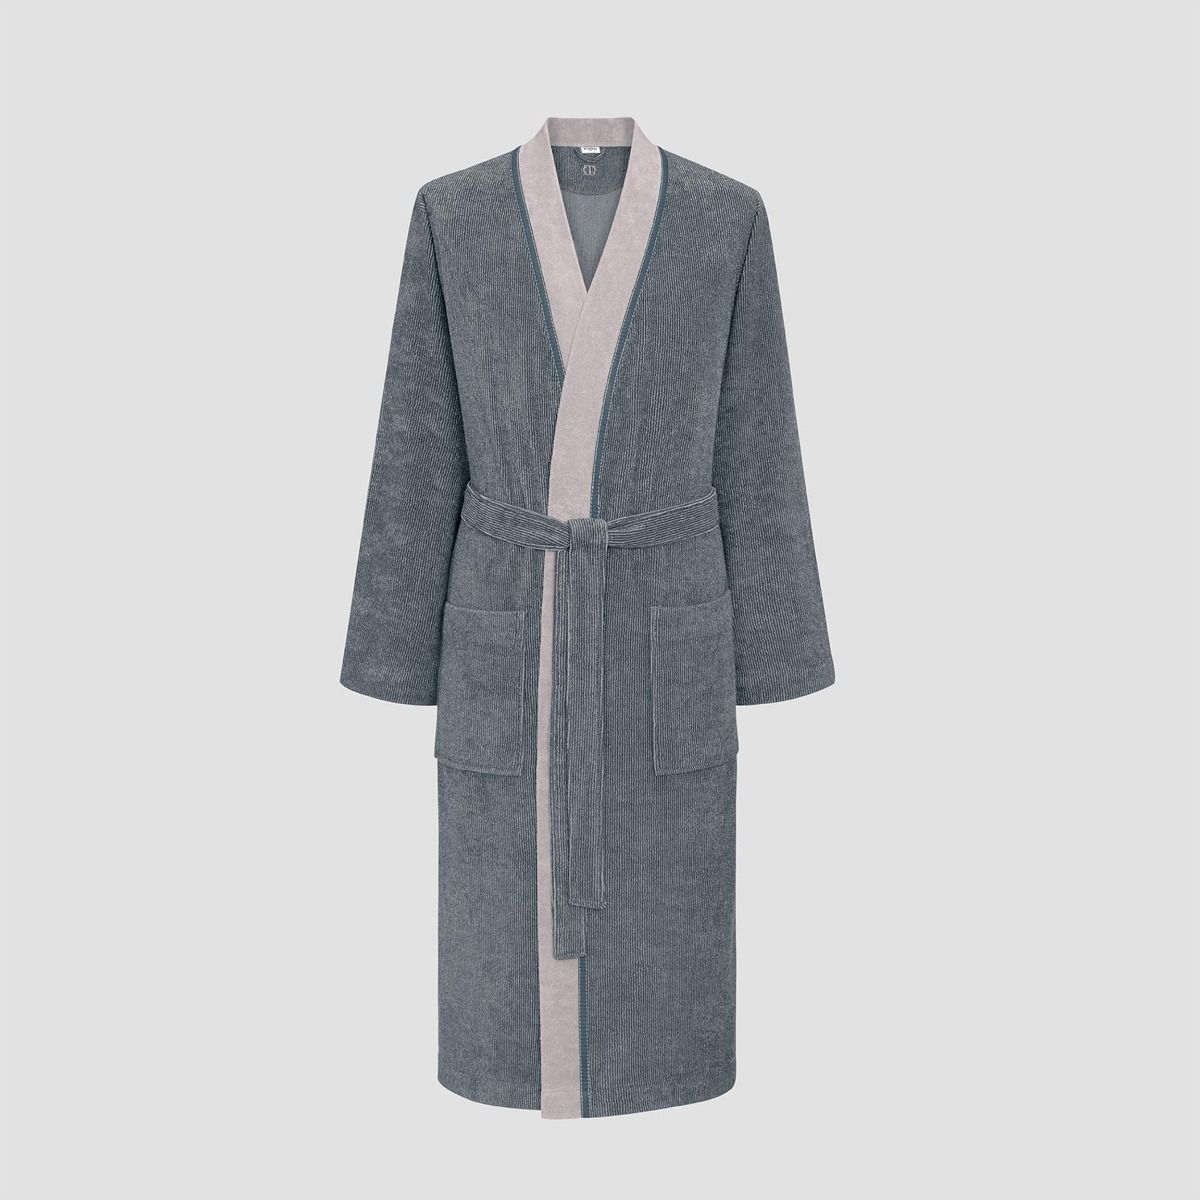 Банный халат Франко цвет: светло-серый (XL), размер xL tgs869852 Банный халат Франко цвет: светло-серый (XL) - фото 1